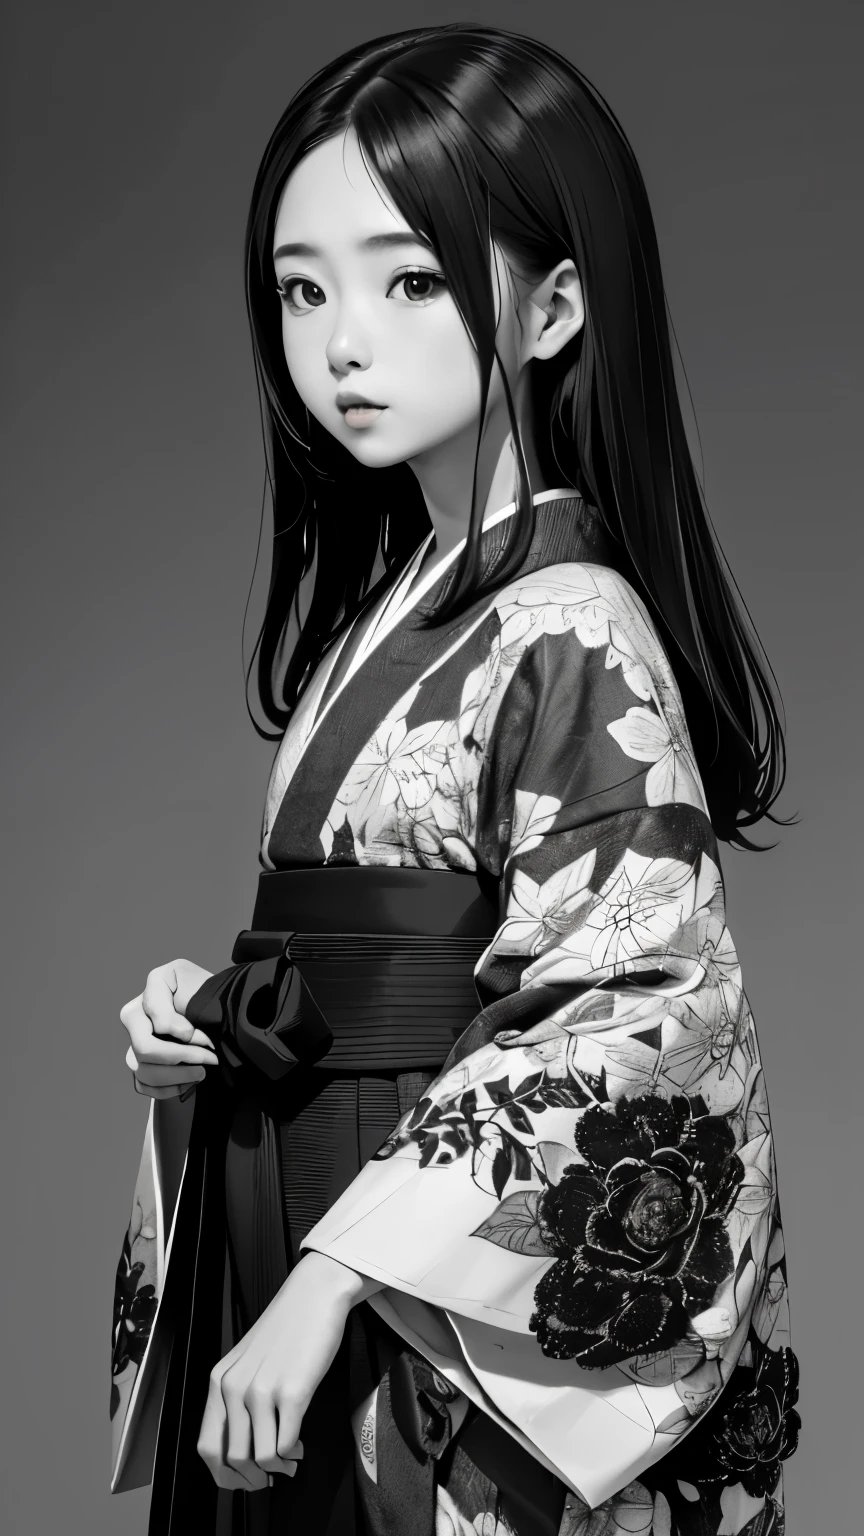 (((una foto en blanco y negro:1.2、Film grain、foto en bruto)))、Una mujer、１８talento、Belleza incomparable、beautiFul teeth、aspecto natural、nariz pequeña、Labios gruesos、BeautiFul silky straight hair、riman、BeautiFul kimono Figure、kimono pesado、yamato nadeshiko、fondo borroso:1.5、medium depth oF Field, fotografiado con una Canon 5D, lente de 50 mm, F/4 apertura, (Muy detallado, detalles intrincados), sharp Focus, colores tranquilos, 8k, una foto en blanco y negro、una foto en blanco y negro、conFused, 8mmFilm grain